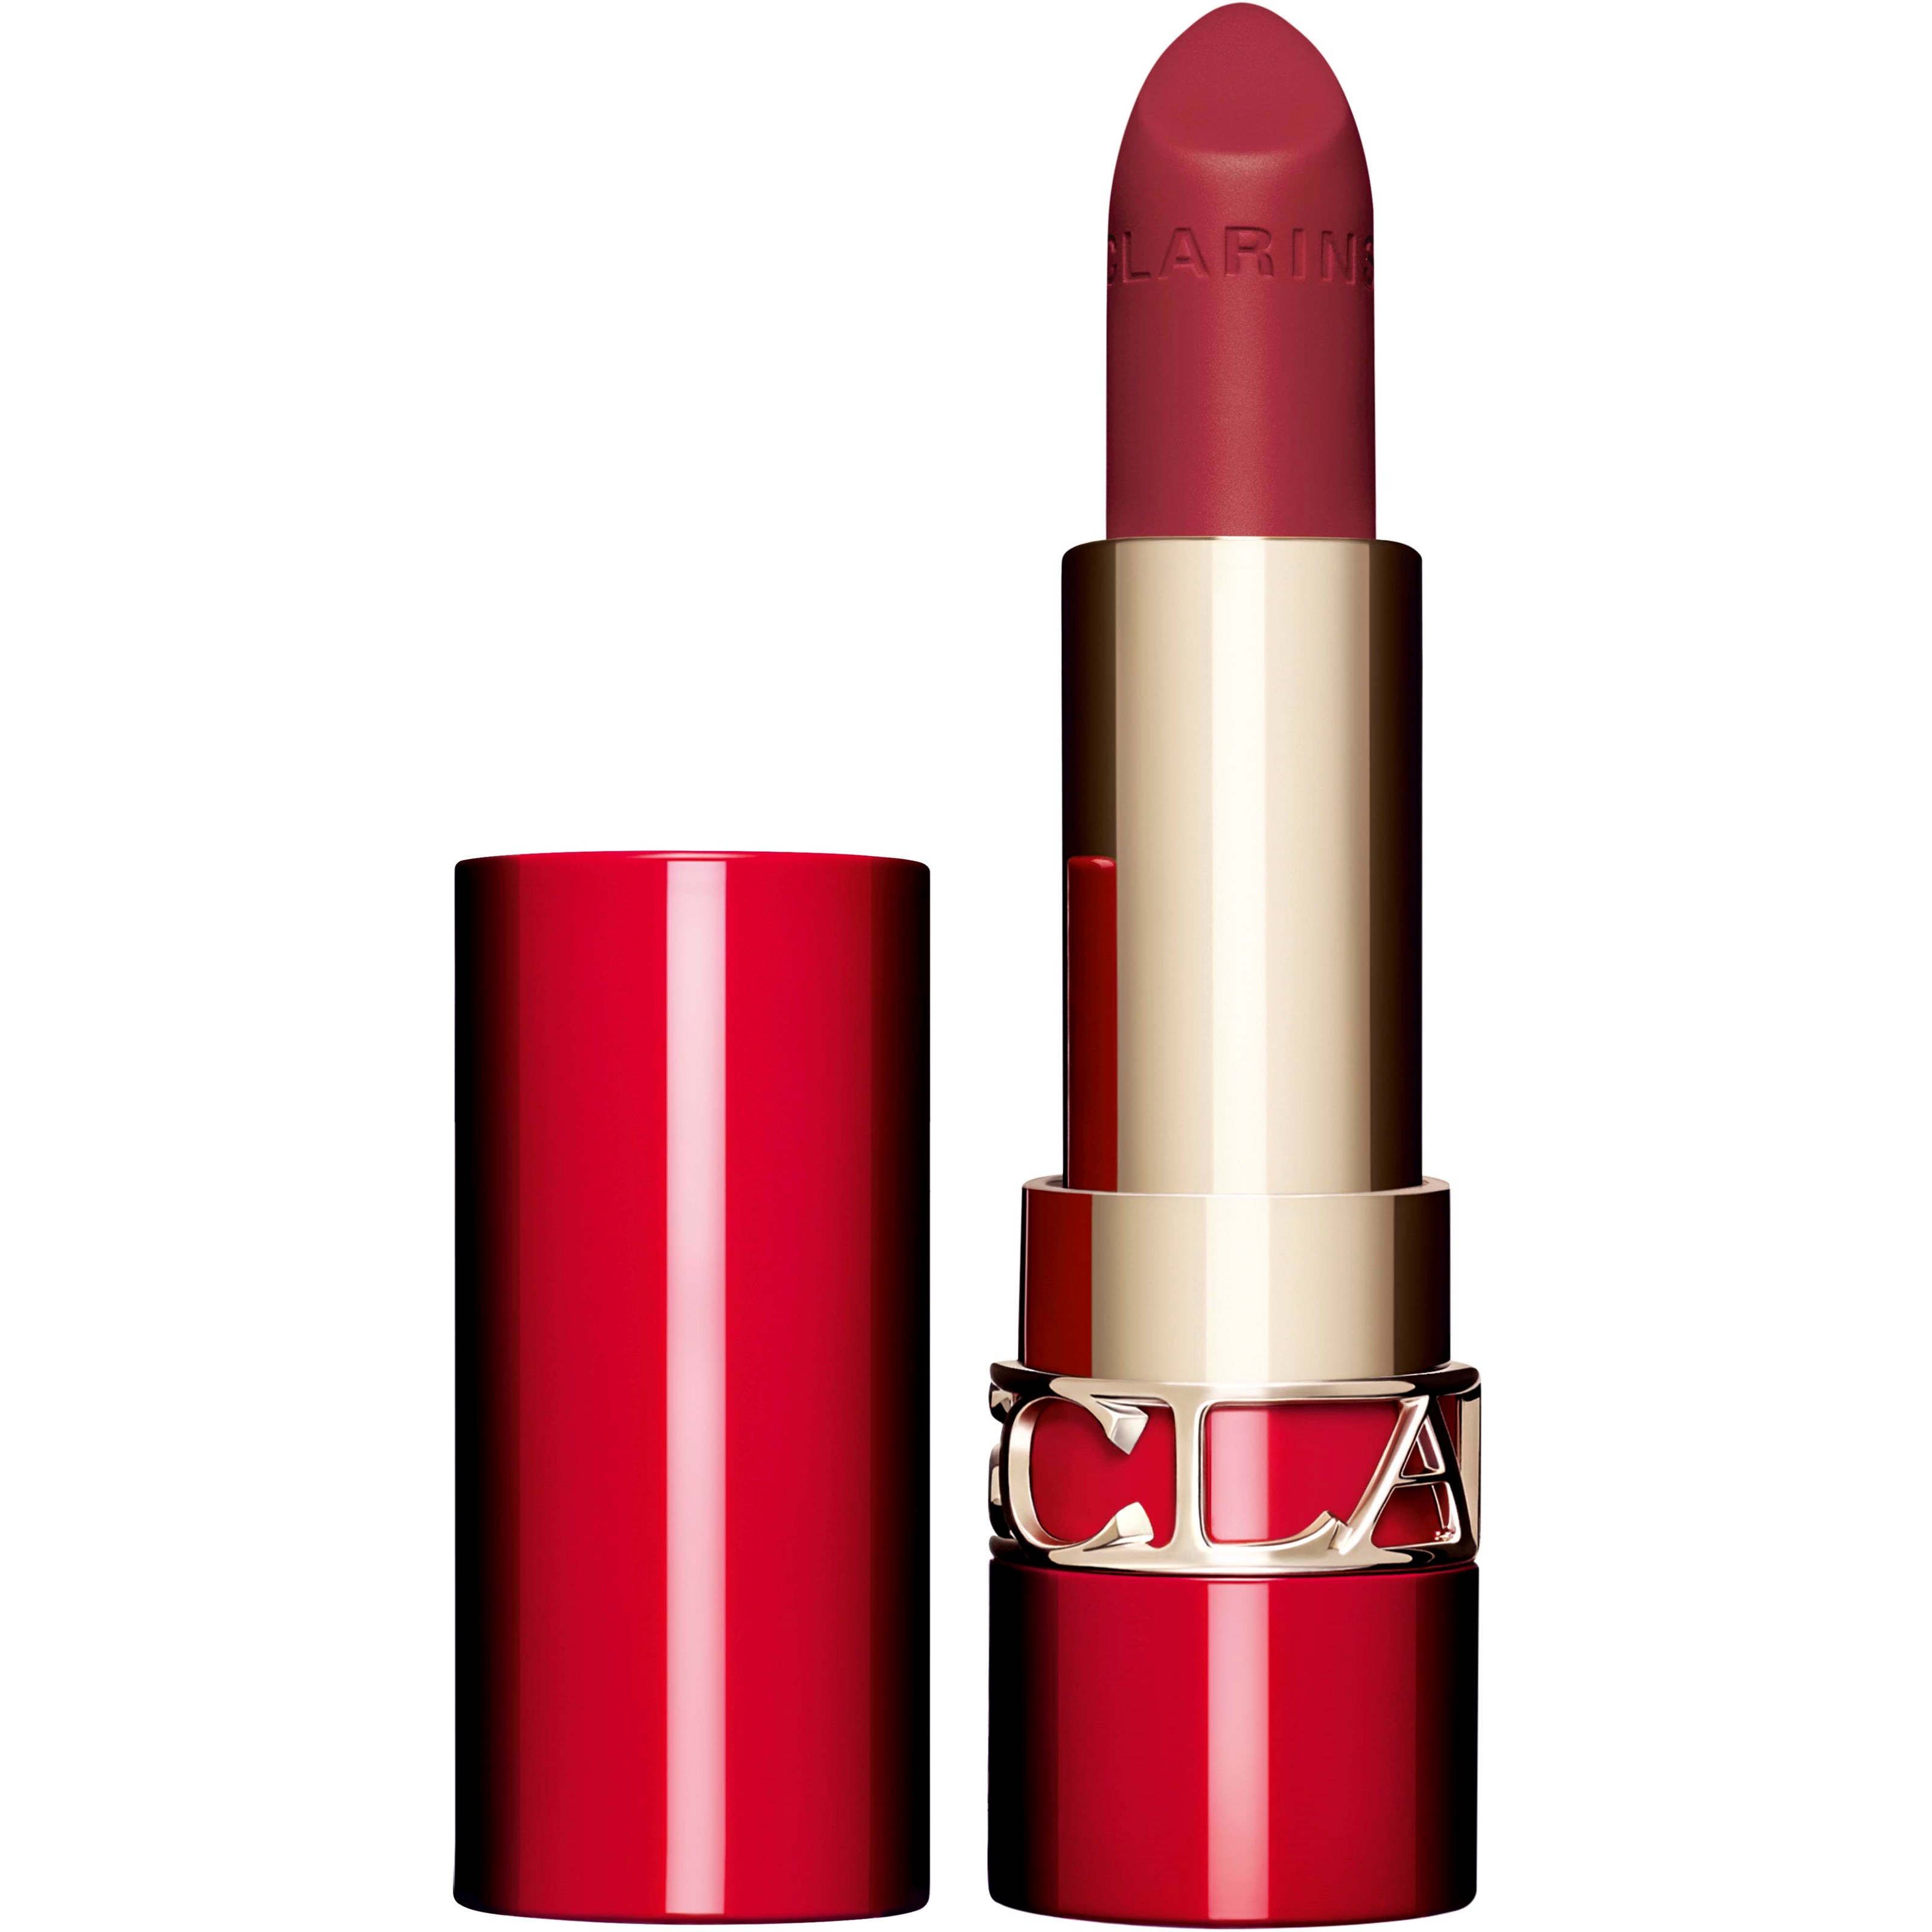 Clarins Joli Rouge Velvet Lipstick 732V Grenadine